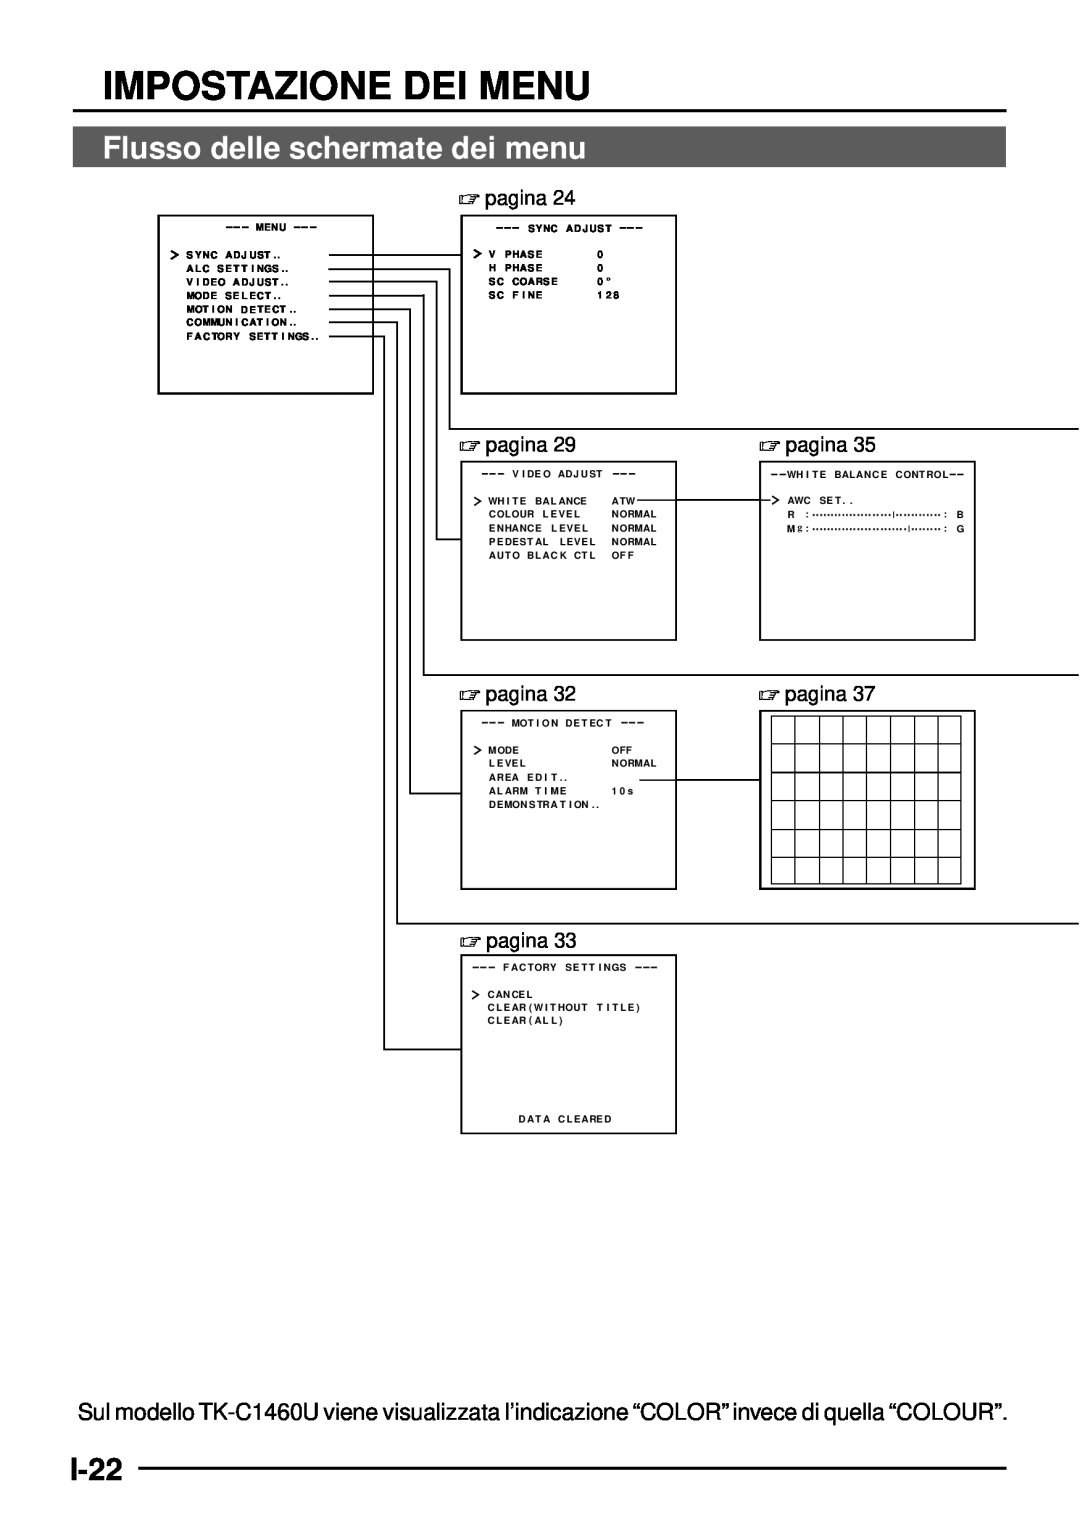 JVC TK-C1460 manual Impostazione Dei Menu, Flusso delle schermate dei menu, I-22 